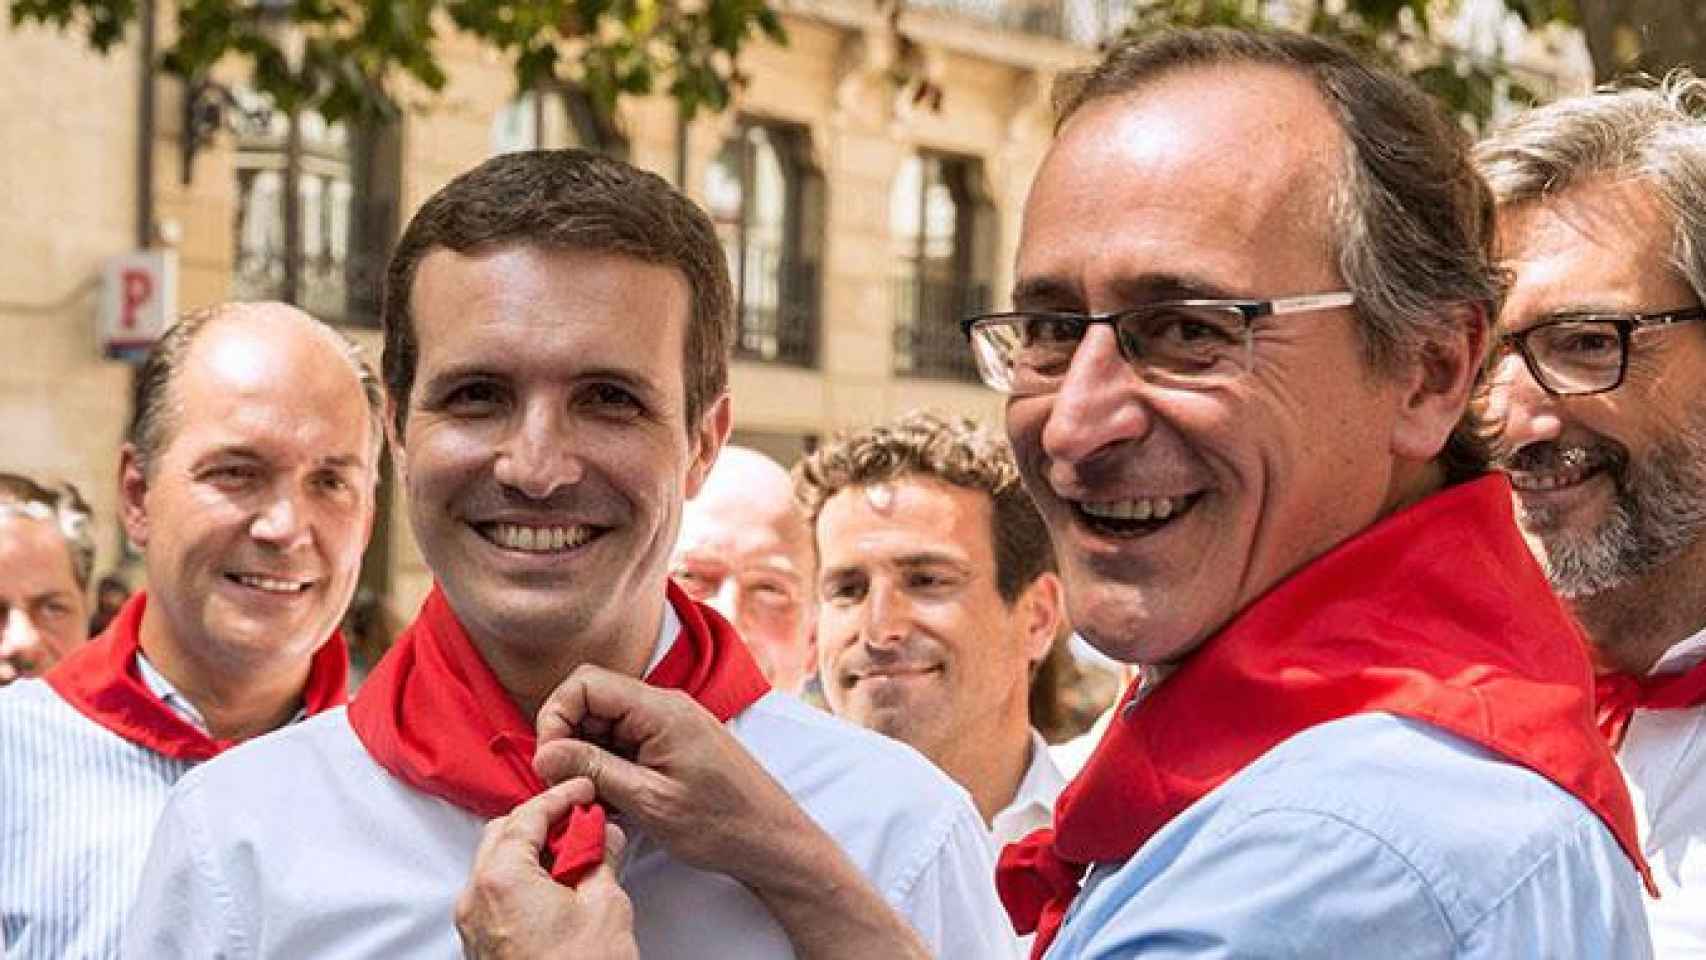 El presidente del PP del País Vasco, Alfonso Alonso, coloca un pañuelo rojo en el cuello a Pablo Casado durante las fiestas de Vitoria / EFE